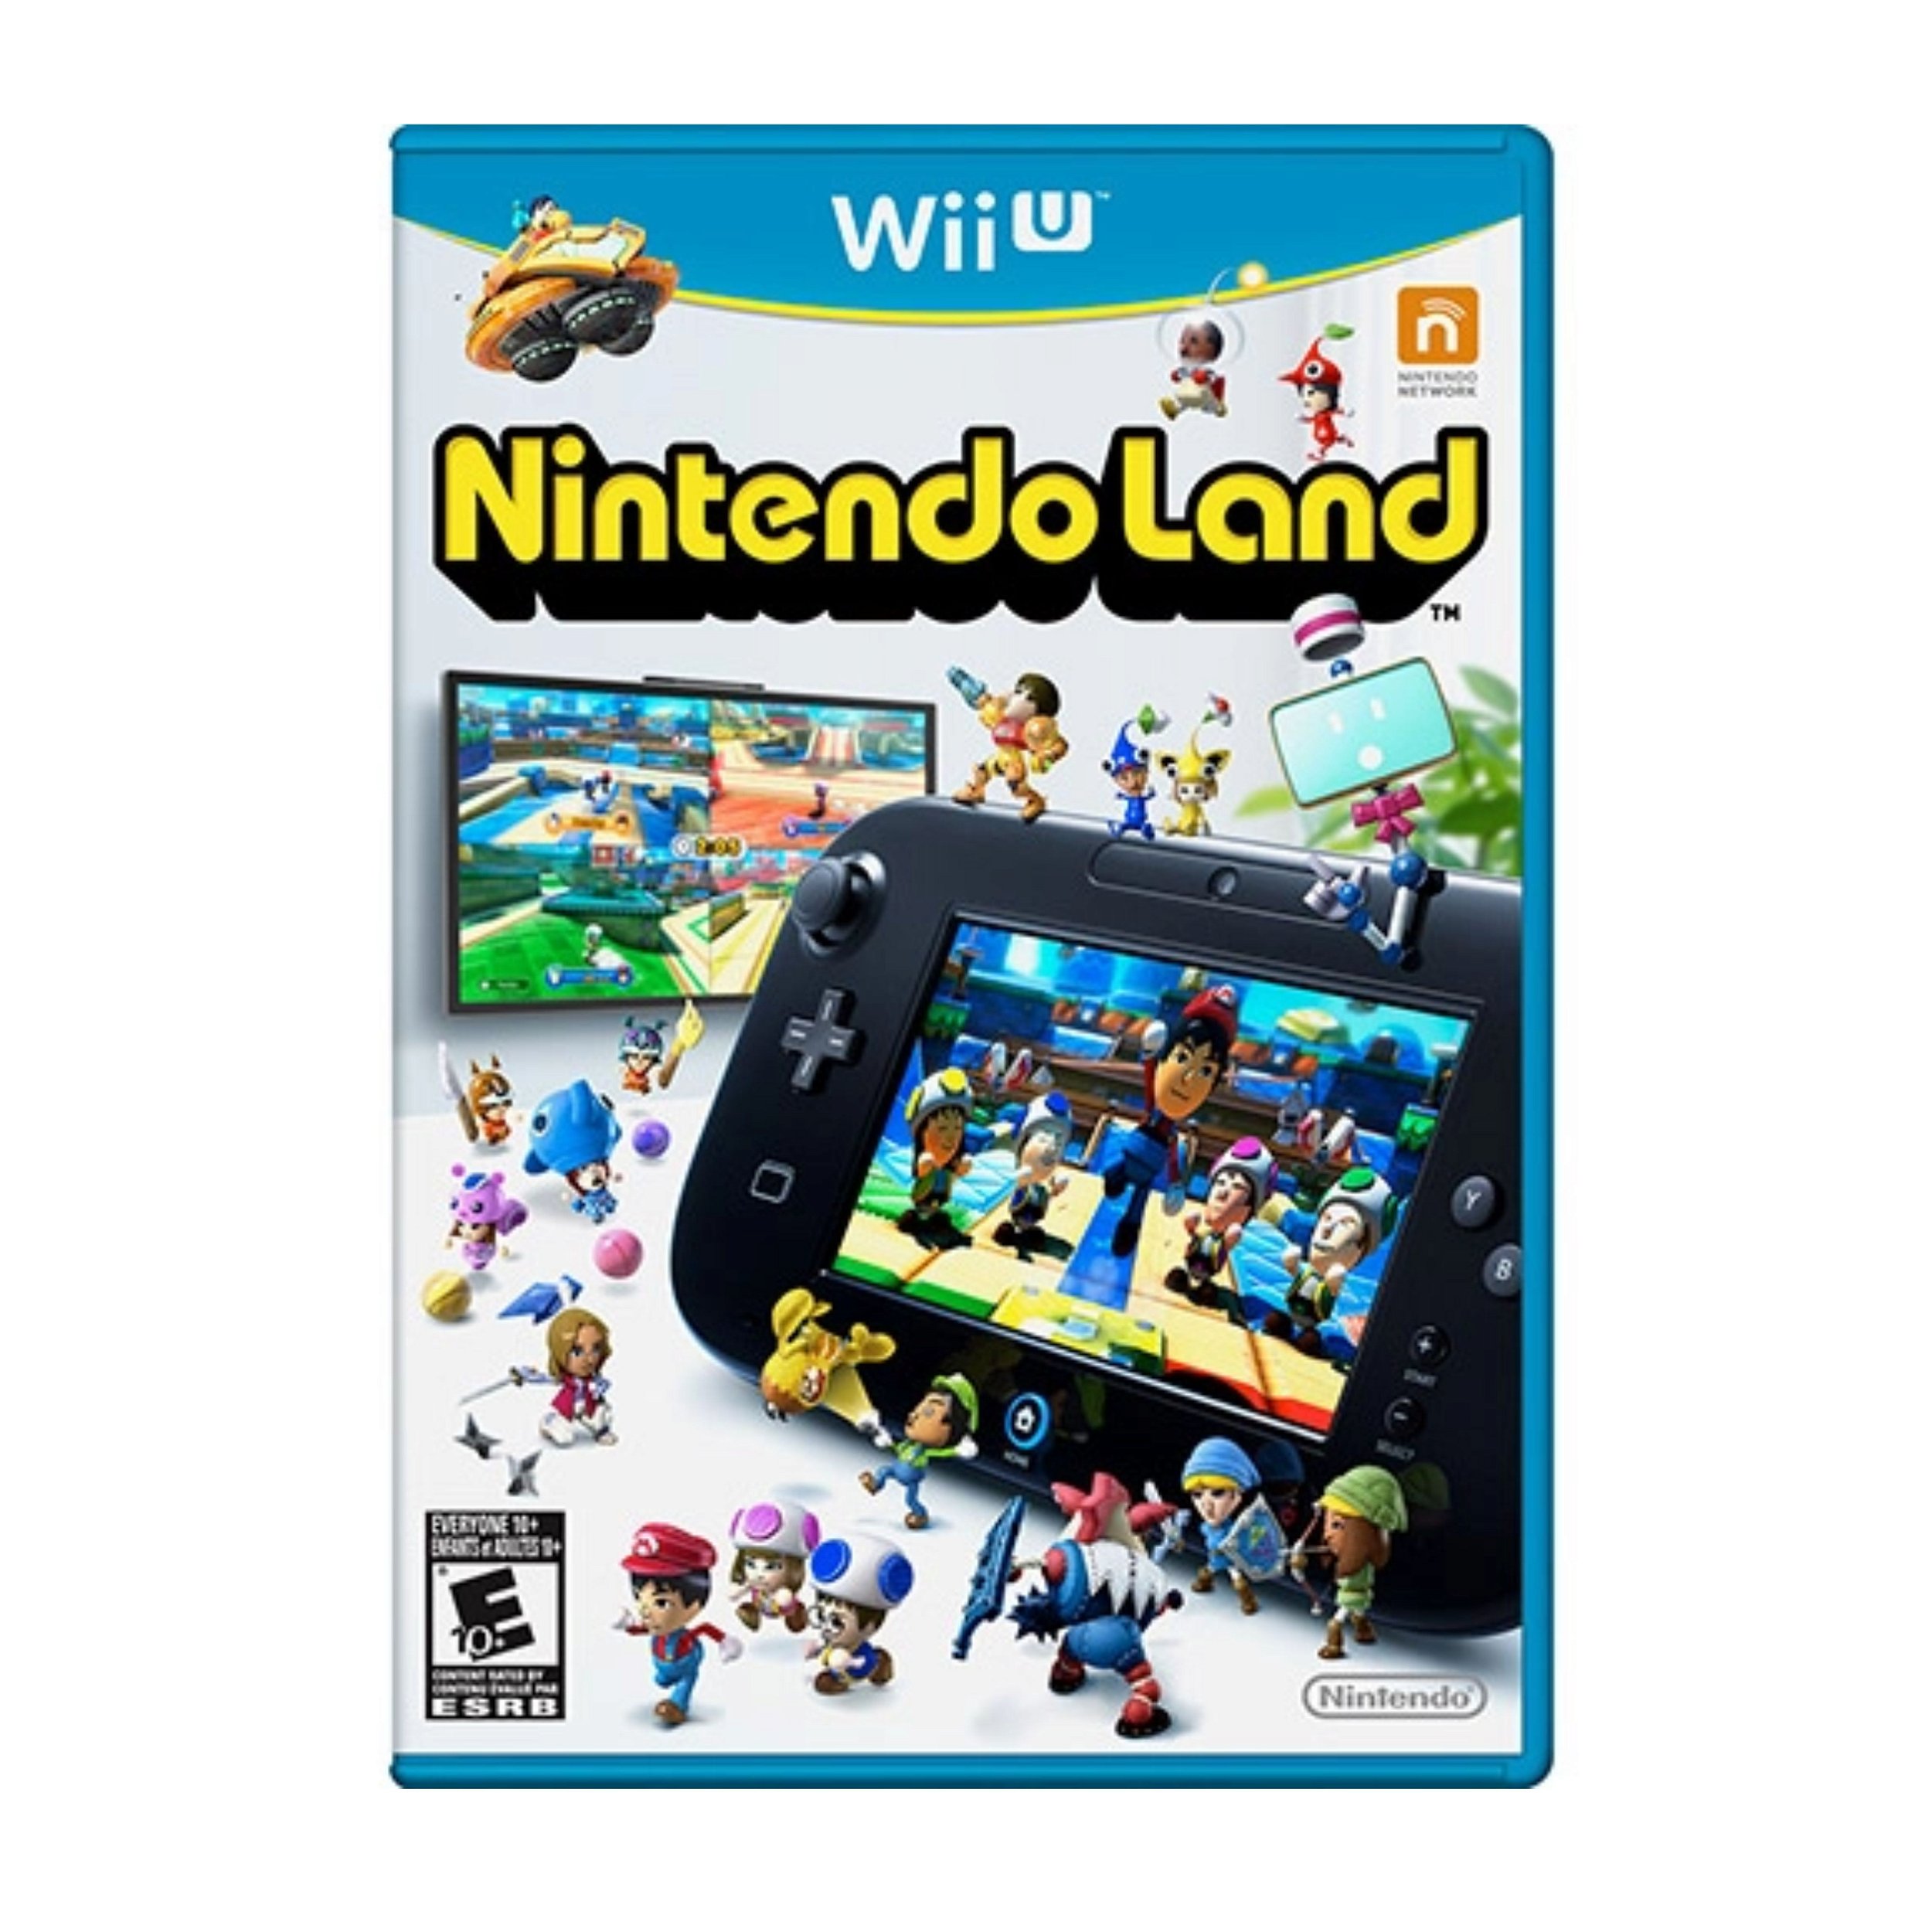 Jogo New Super Mario Bros Wii - Wii Seminovo - SL Shop - A melhor loja de  smartphones, games, acessórios e assistência técnica